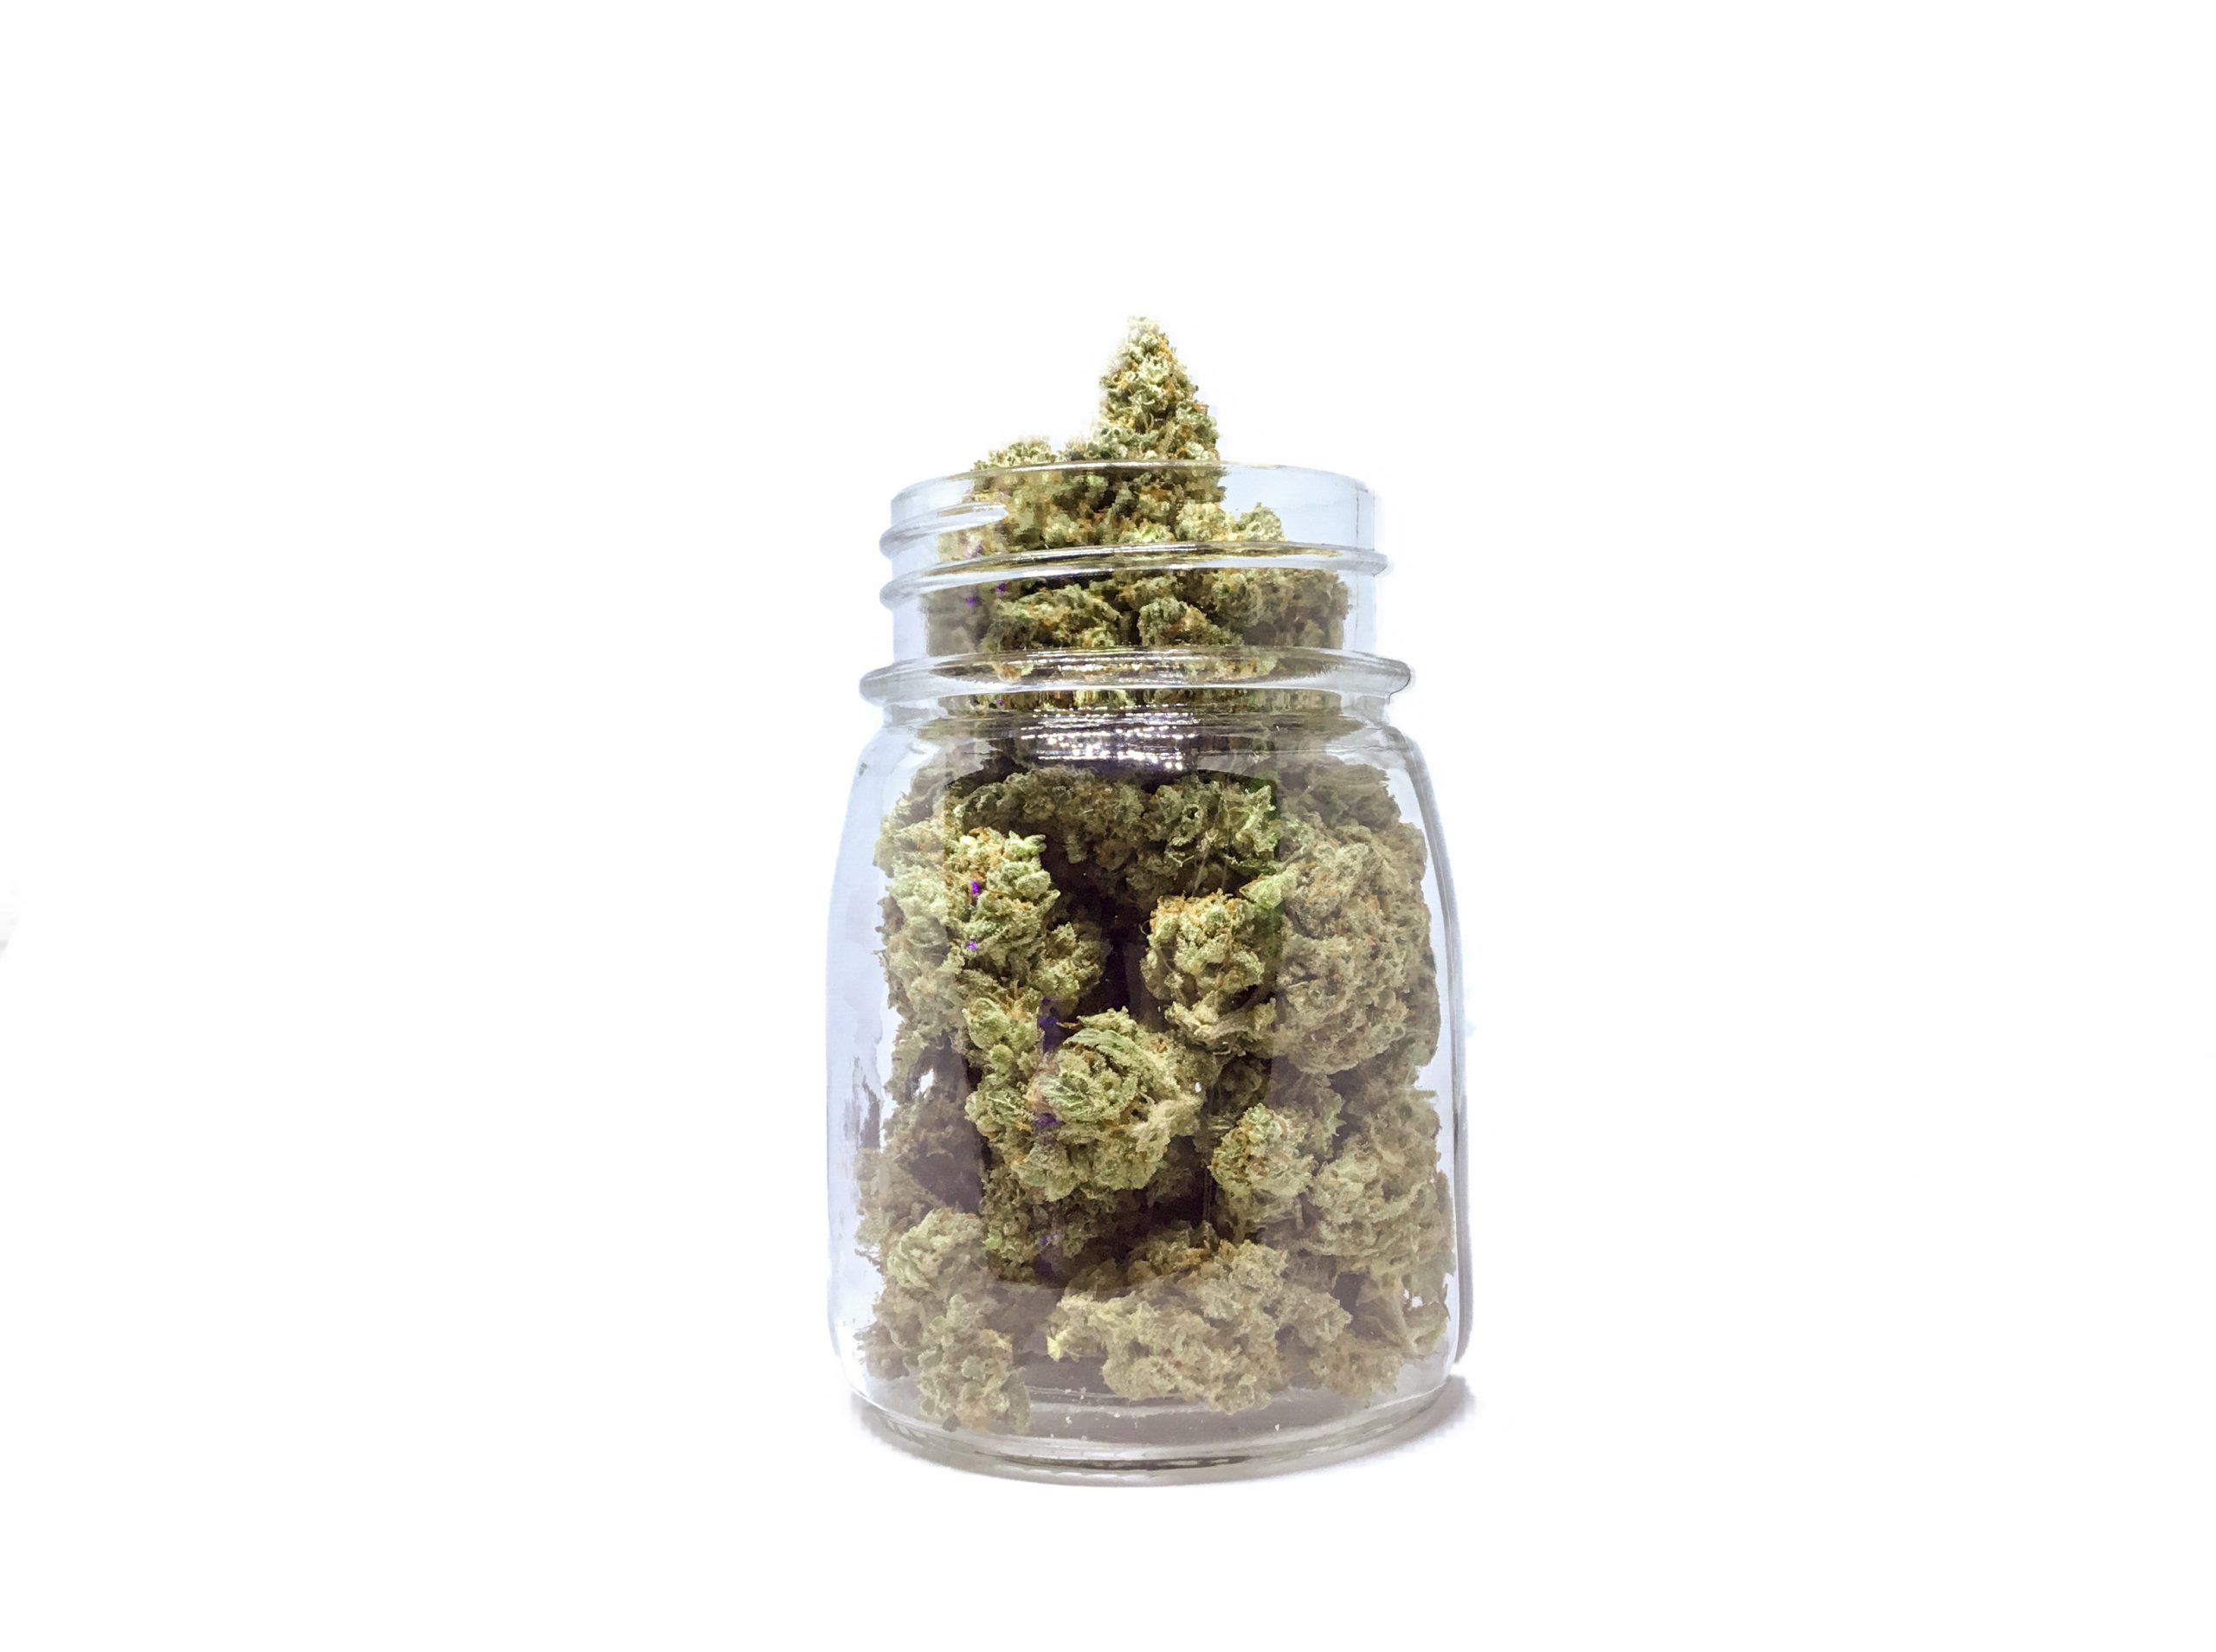 Marijuana in Jar Isolated white background